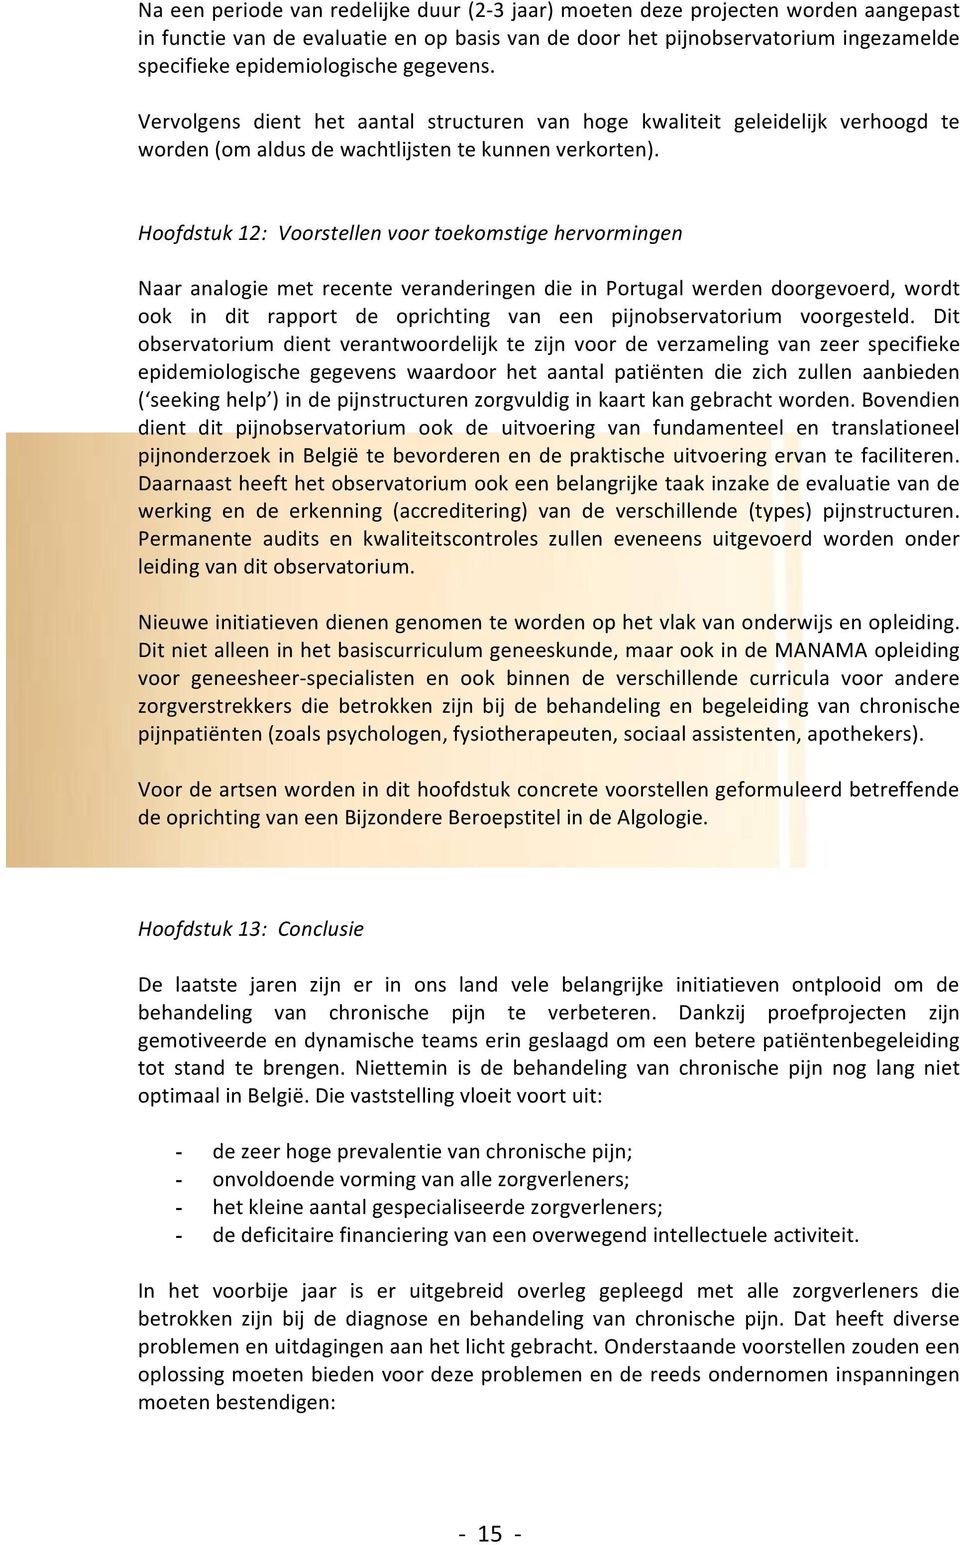 Hoofdstuk 12: Voorstellen voor toekomstige hervormingen Naar analogie met recente veranderingen die in Portugal werden doorgevoerd, wordt ook in dit rapport de oprichting van een pijnobservatorium